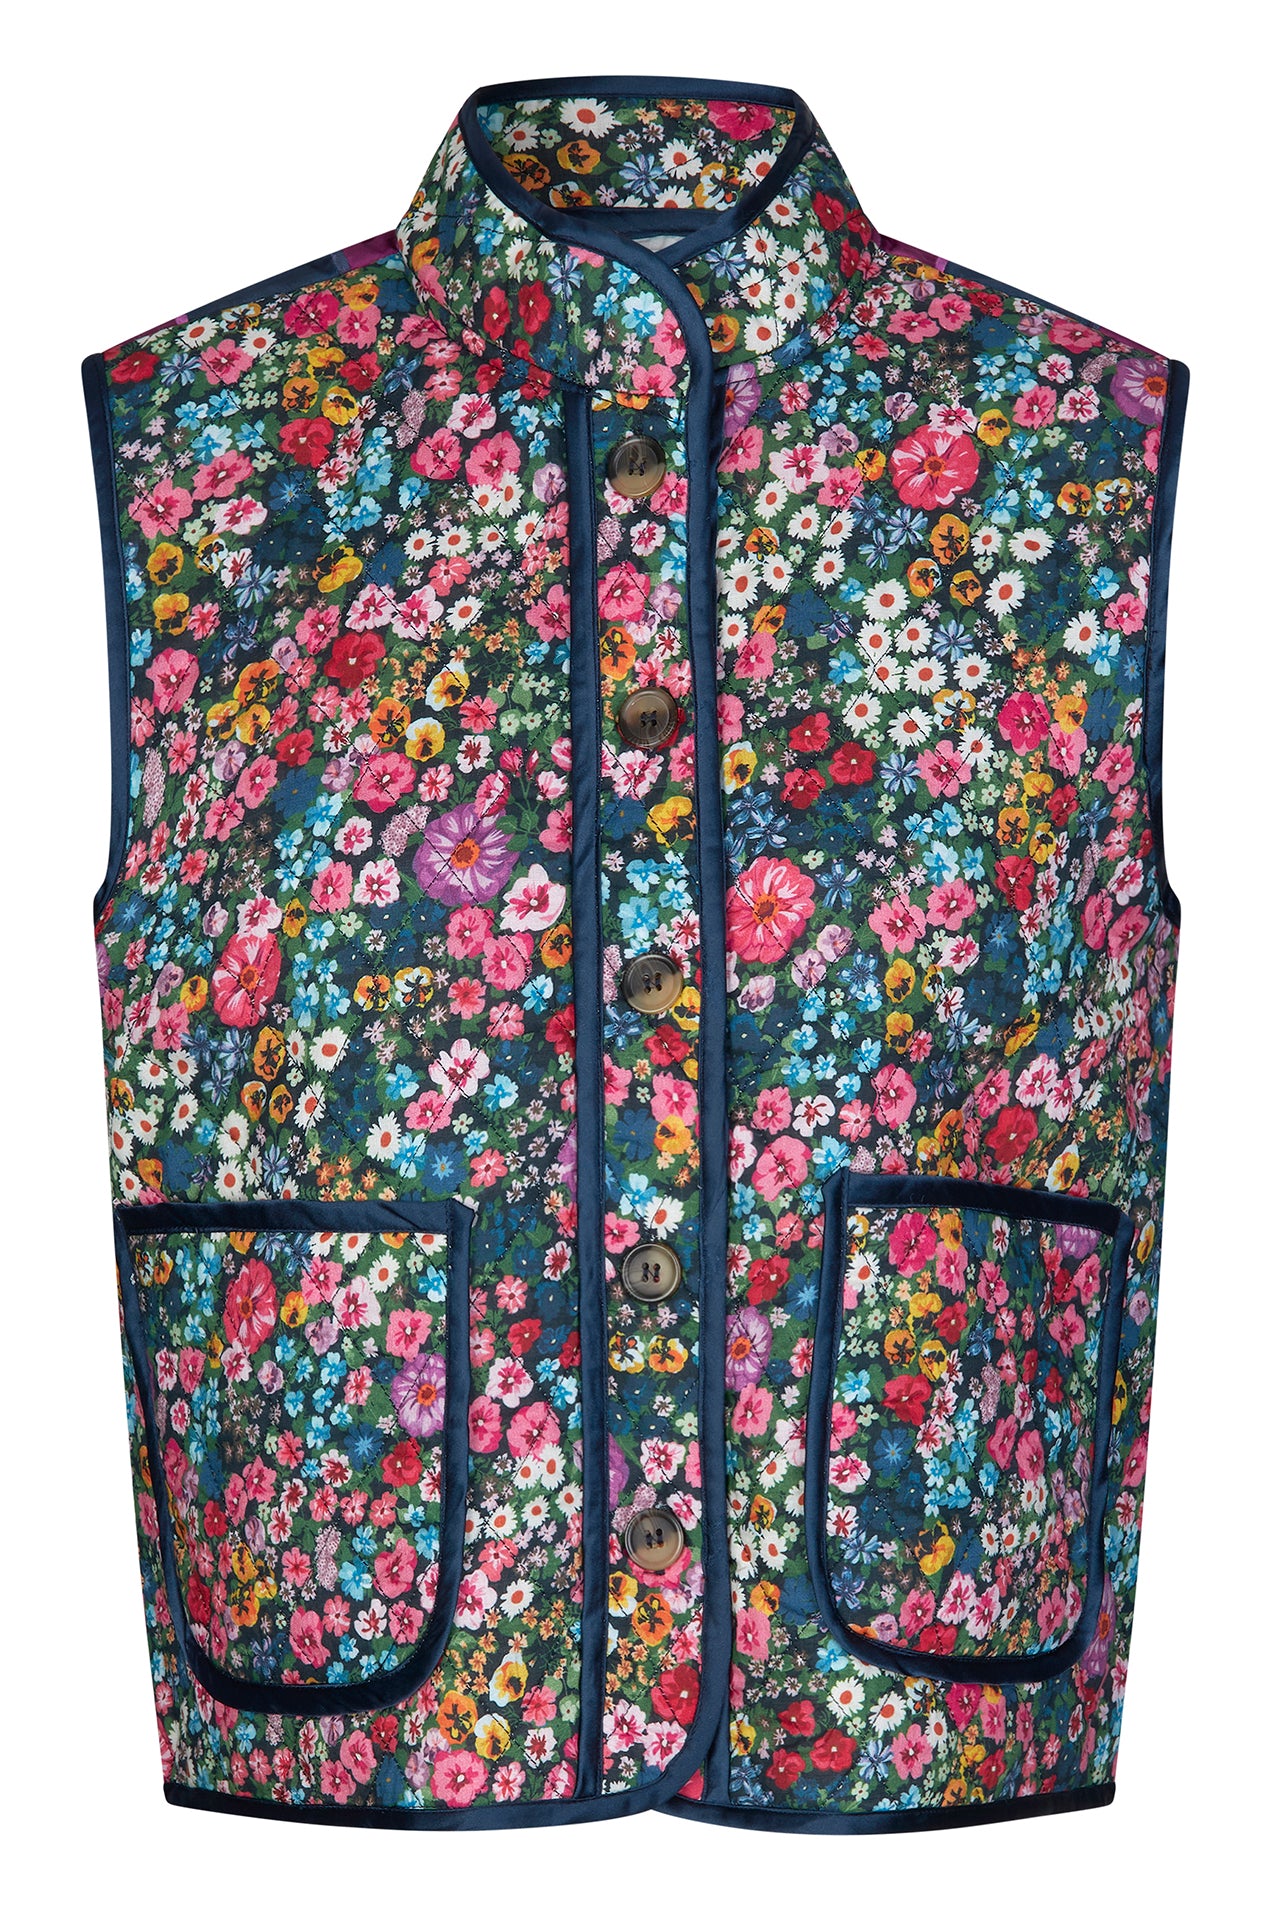 Lollys Laundry CairoLL Vest Vest 74 Flower Print